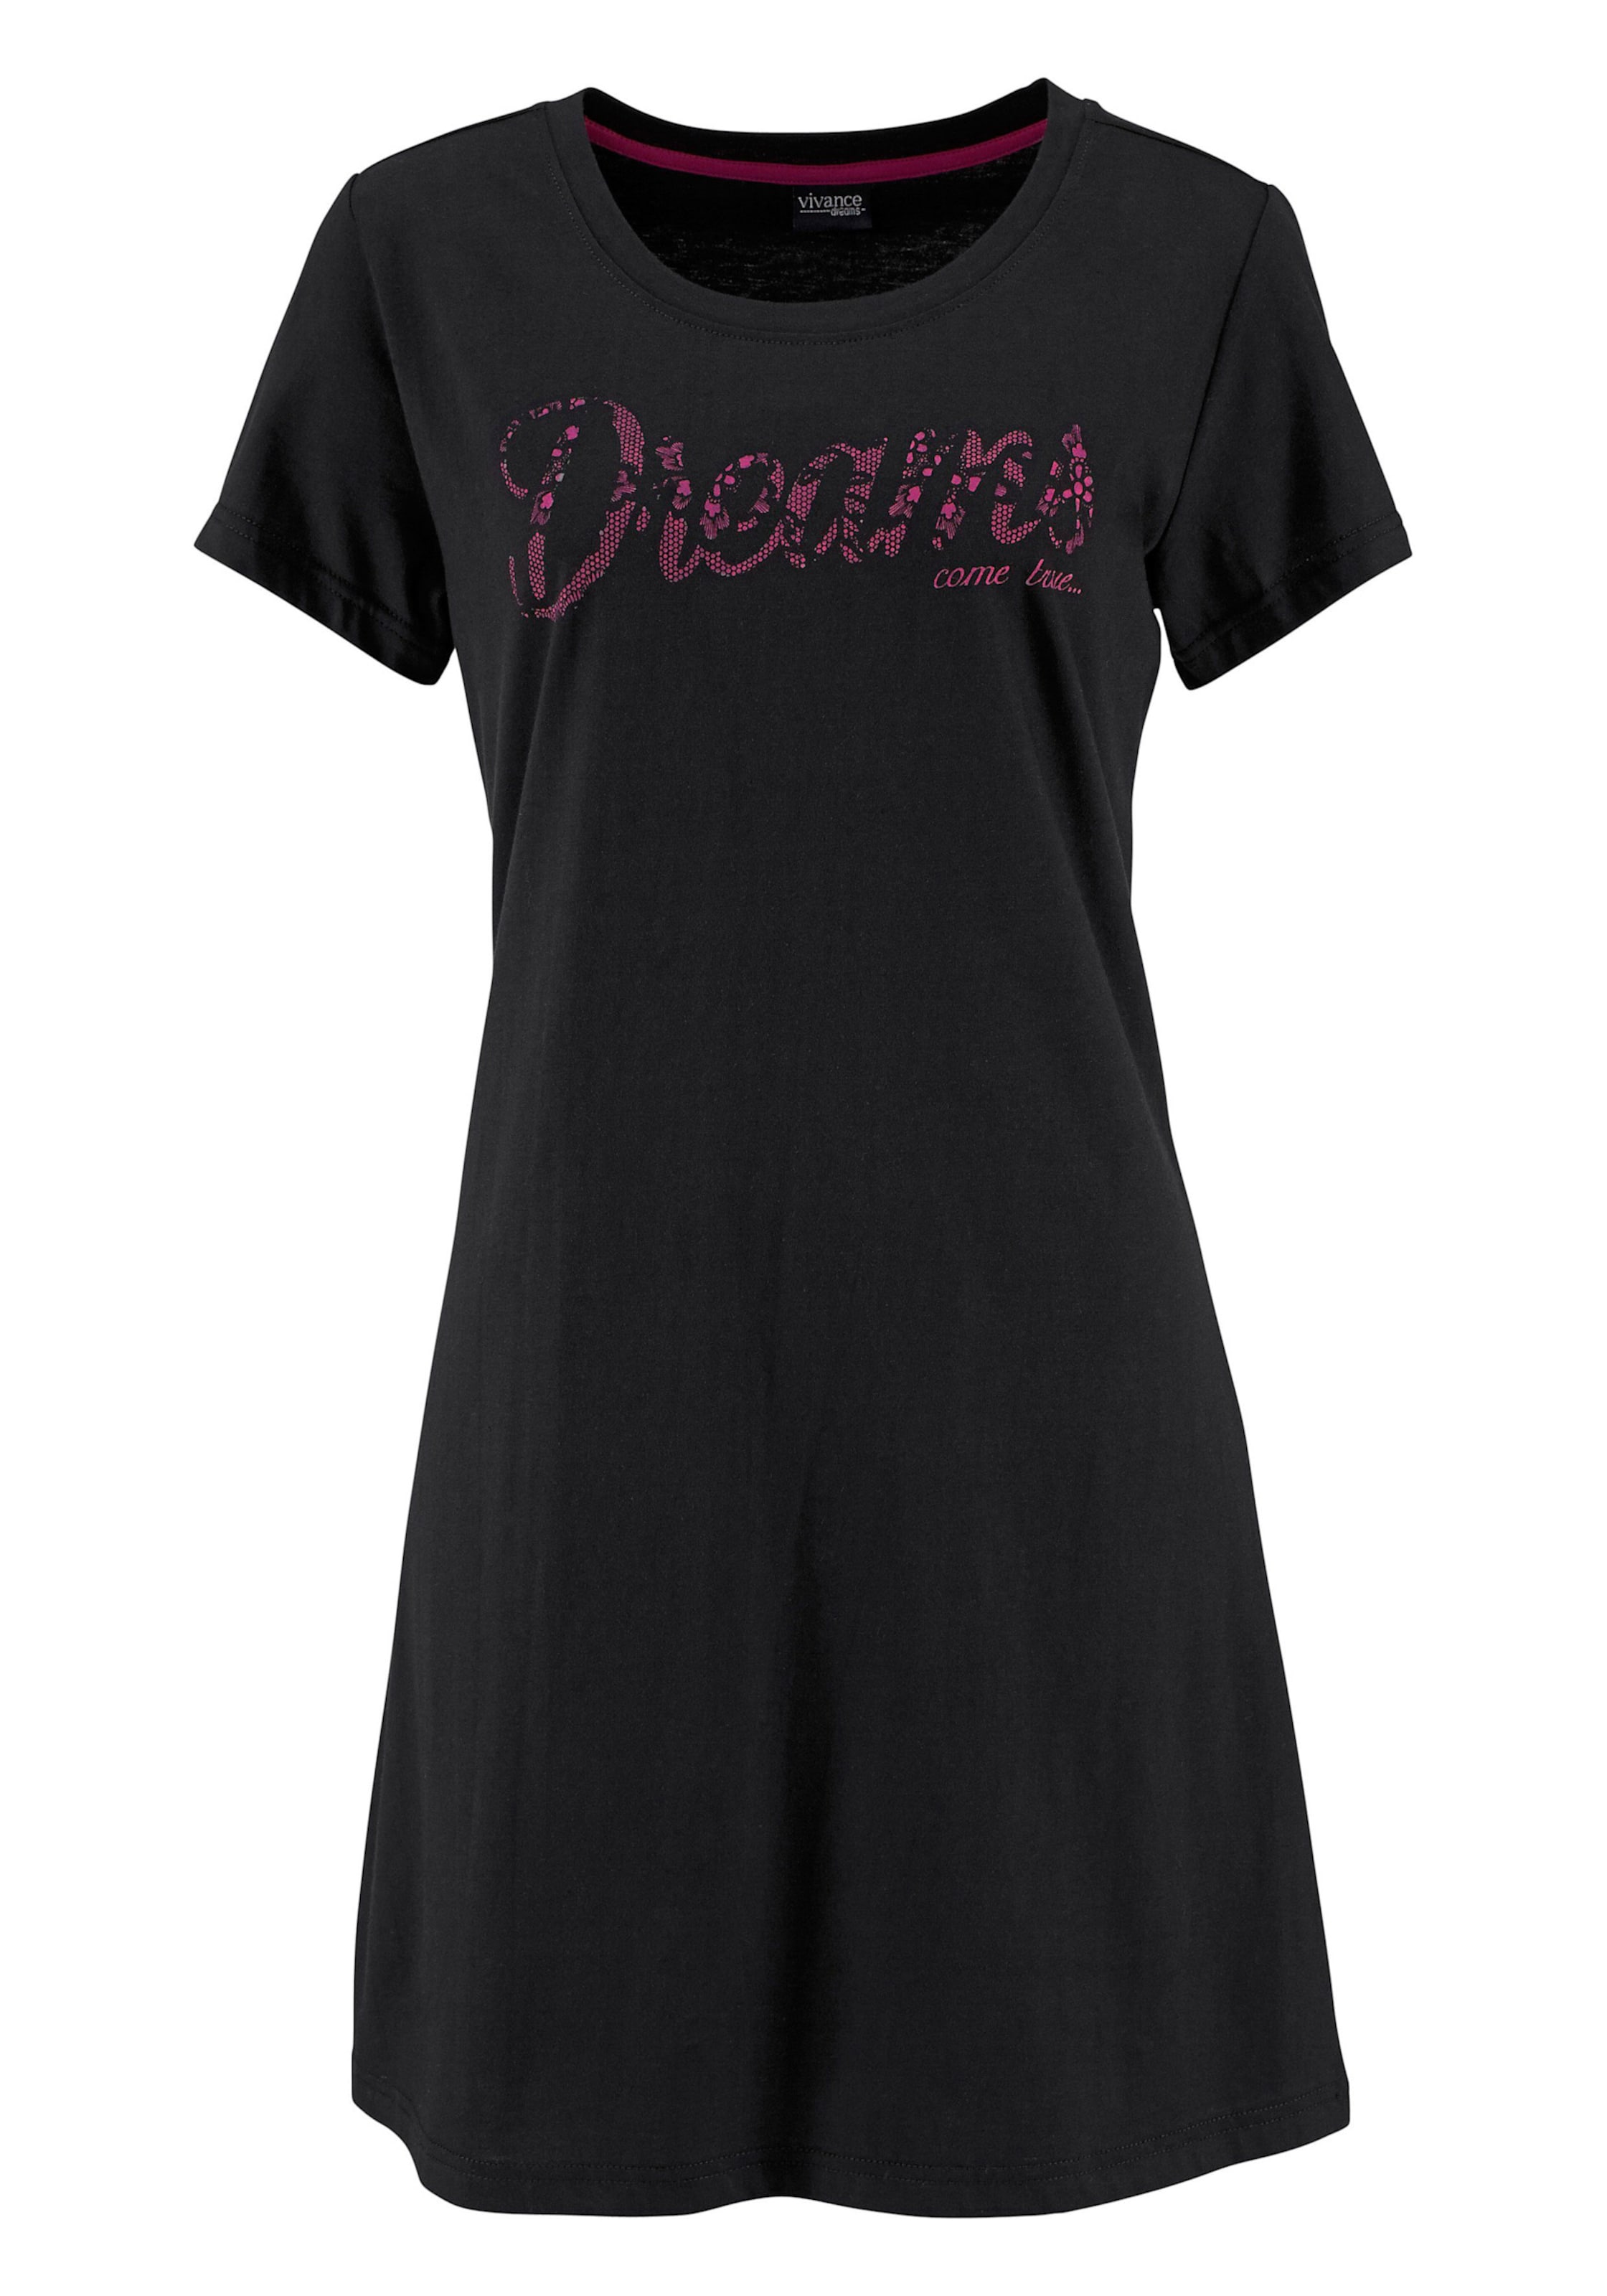 In Viva günstig Kaufen-Sleepshirt in pink, schwarz von Vivance Dreams. Sleepshirt in pink, schwarz von Vivance Dreams <![CDATA[Modischer Kurz-Style mit Rundhalsausschnitt, kurzen Ärmeln und Frontdruck in Spitzen-Optik. Single-Jersey aus 100% Baumwolle.]]>. 